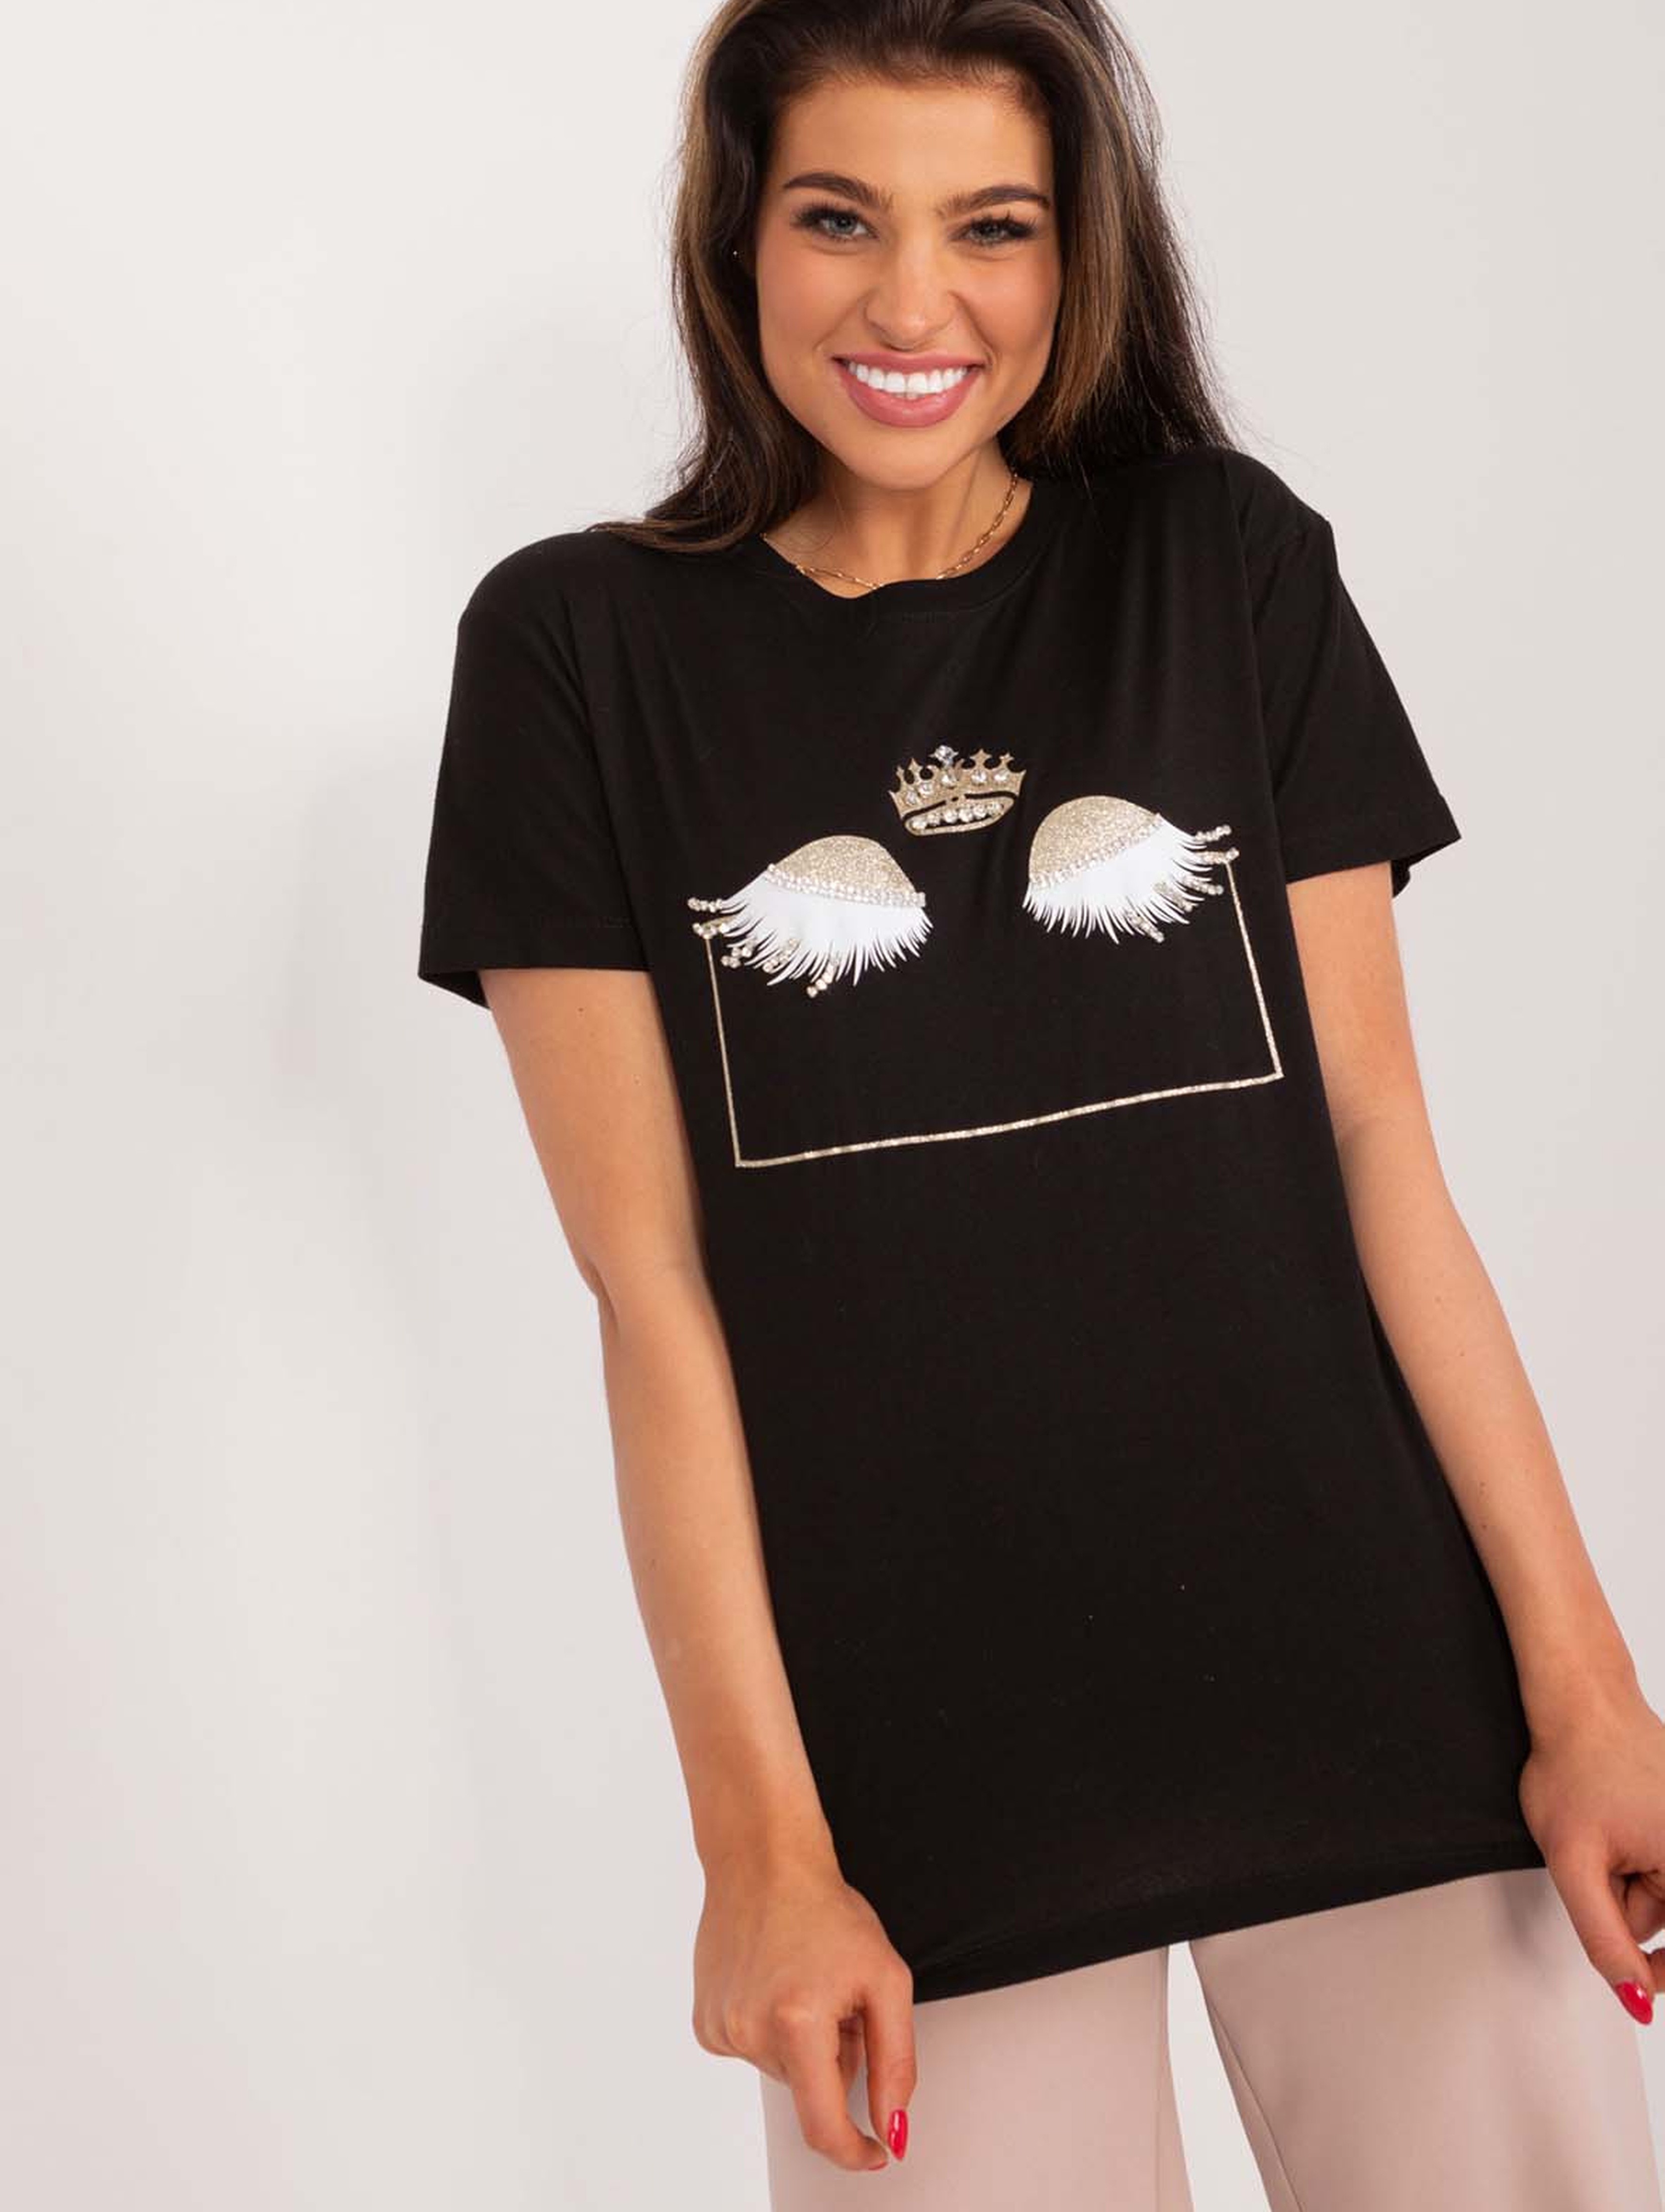 Bawełniany t-shirt damski z błyszczącym nadrukiem- czarny